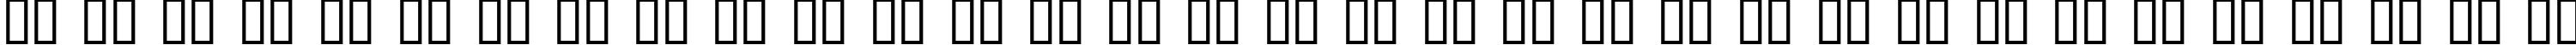 Пример написания русского алфавита шрифтом Deluxe Ducks